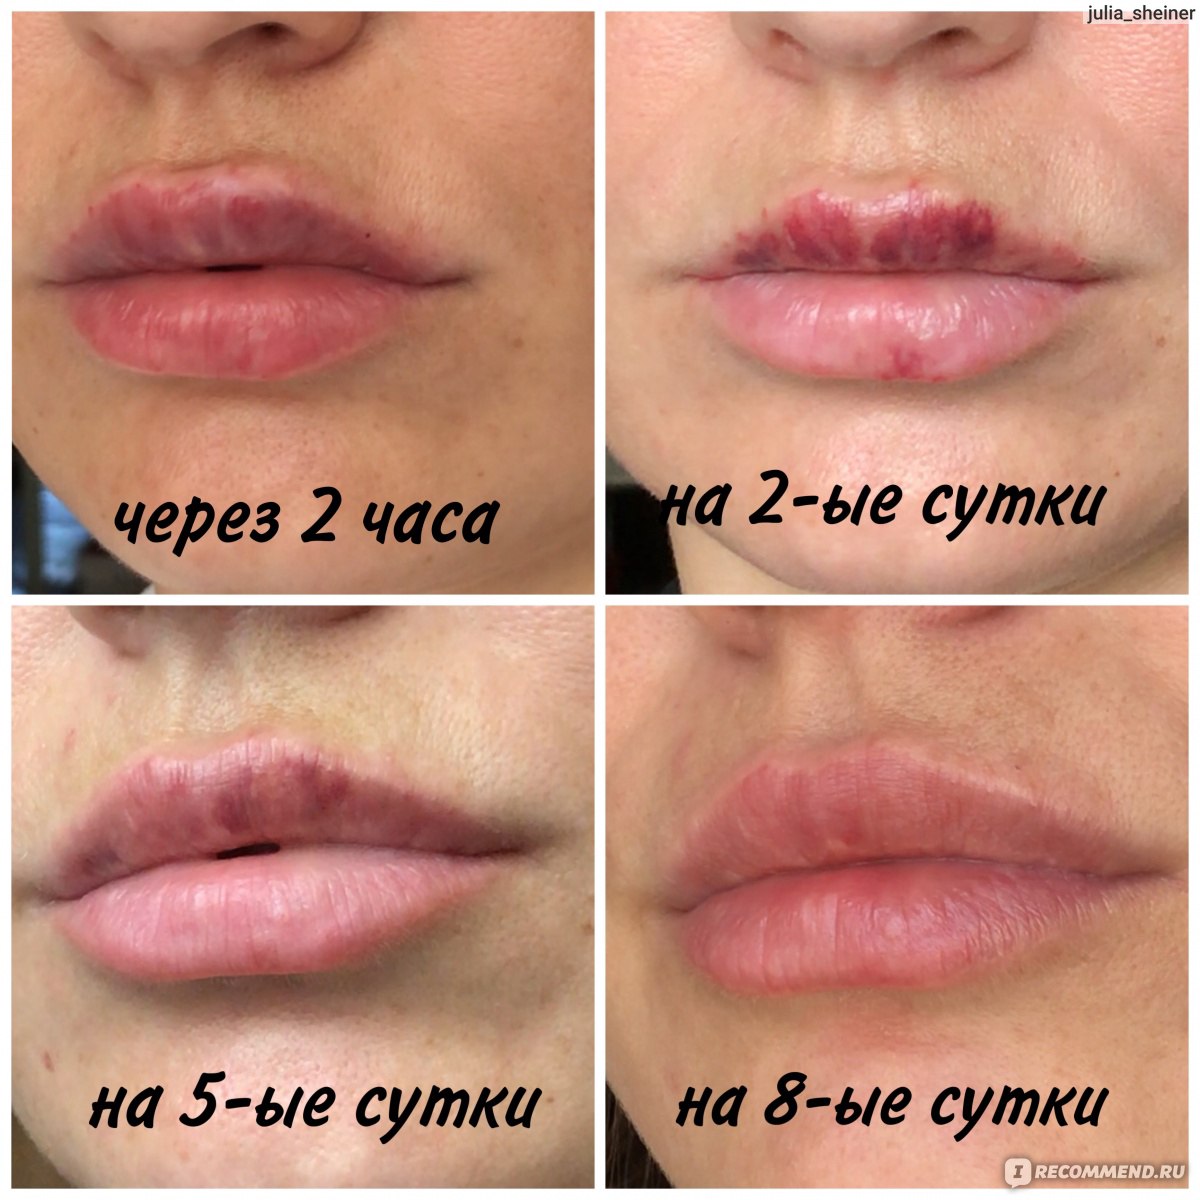 Гиалуроновые усы после увеличение губ